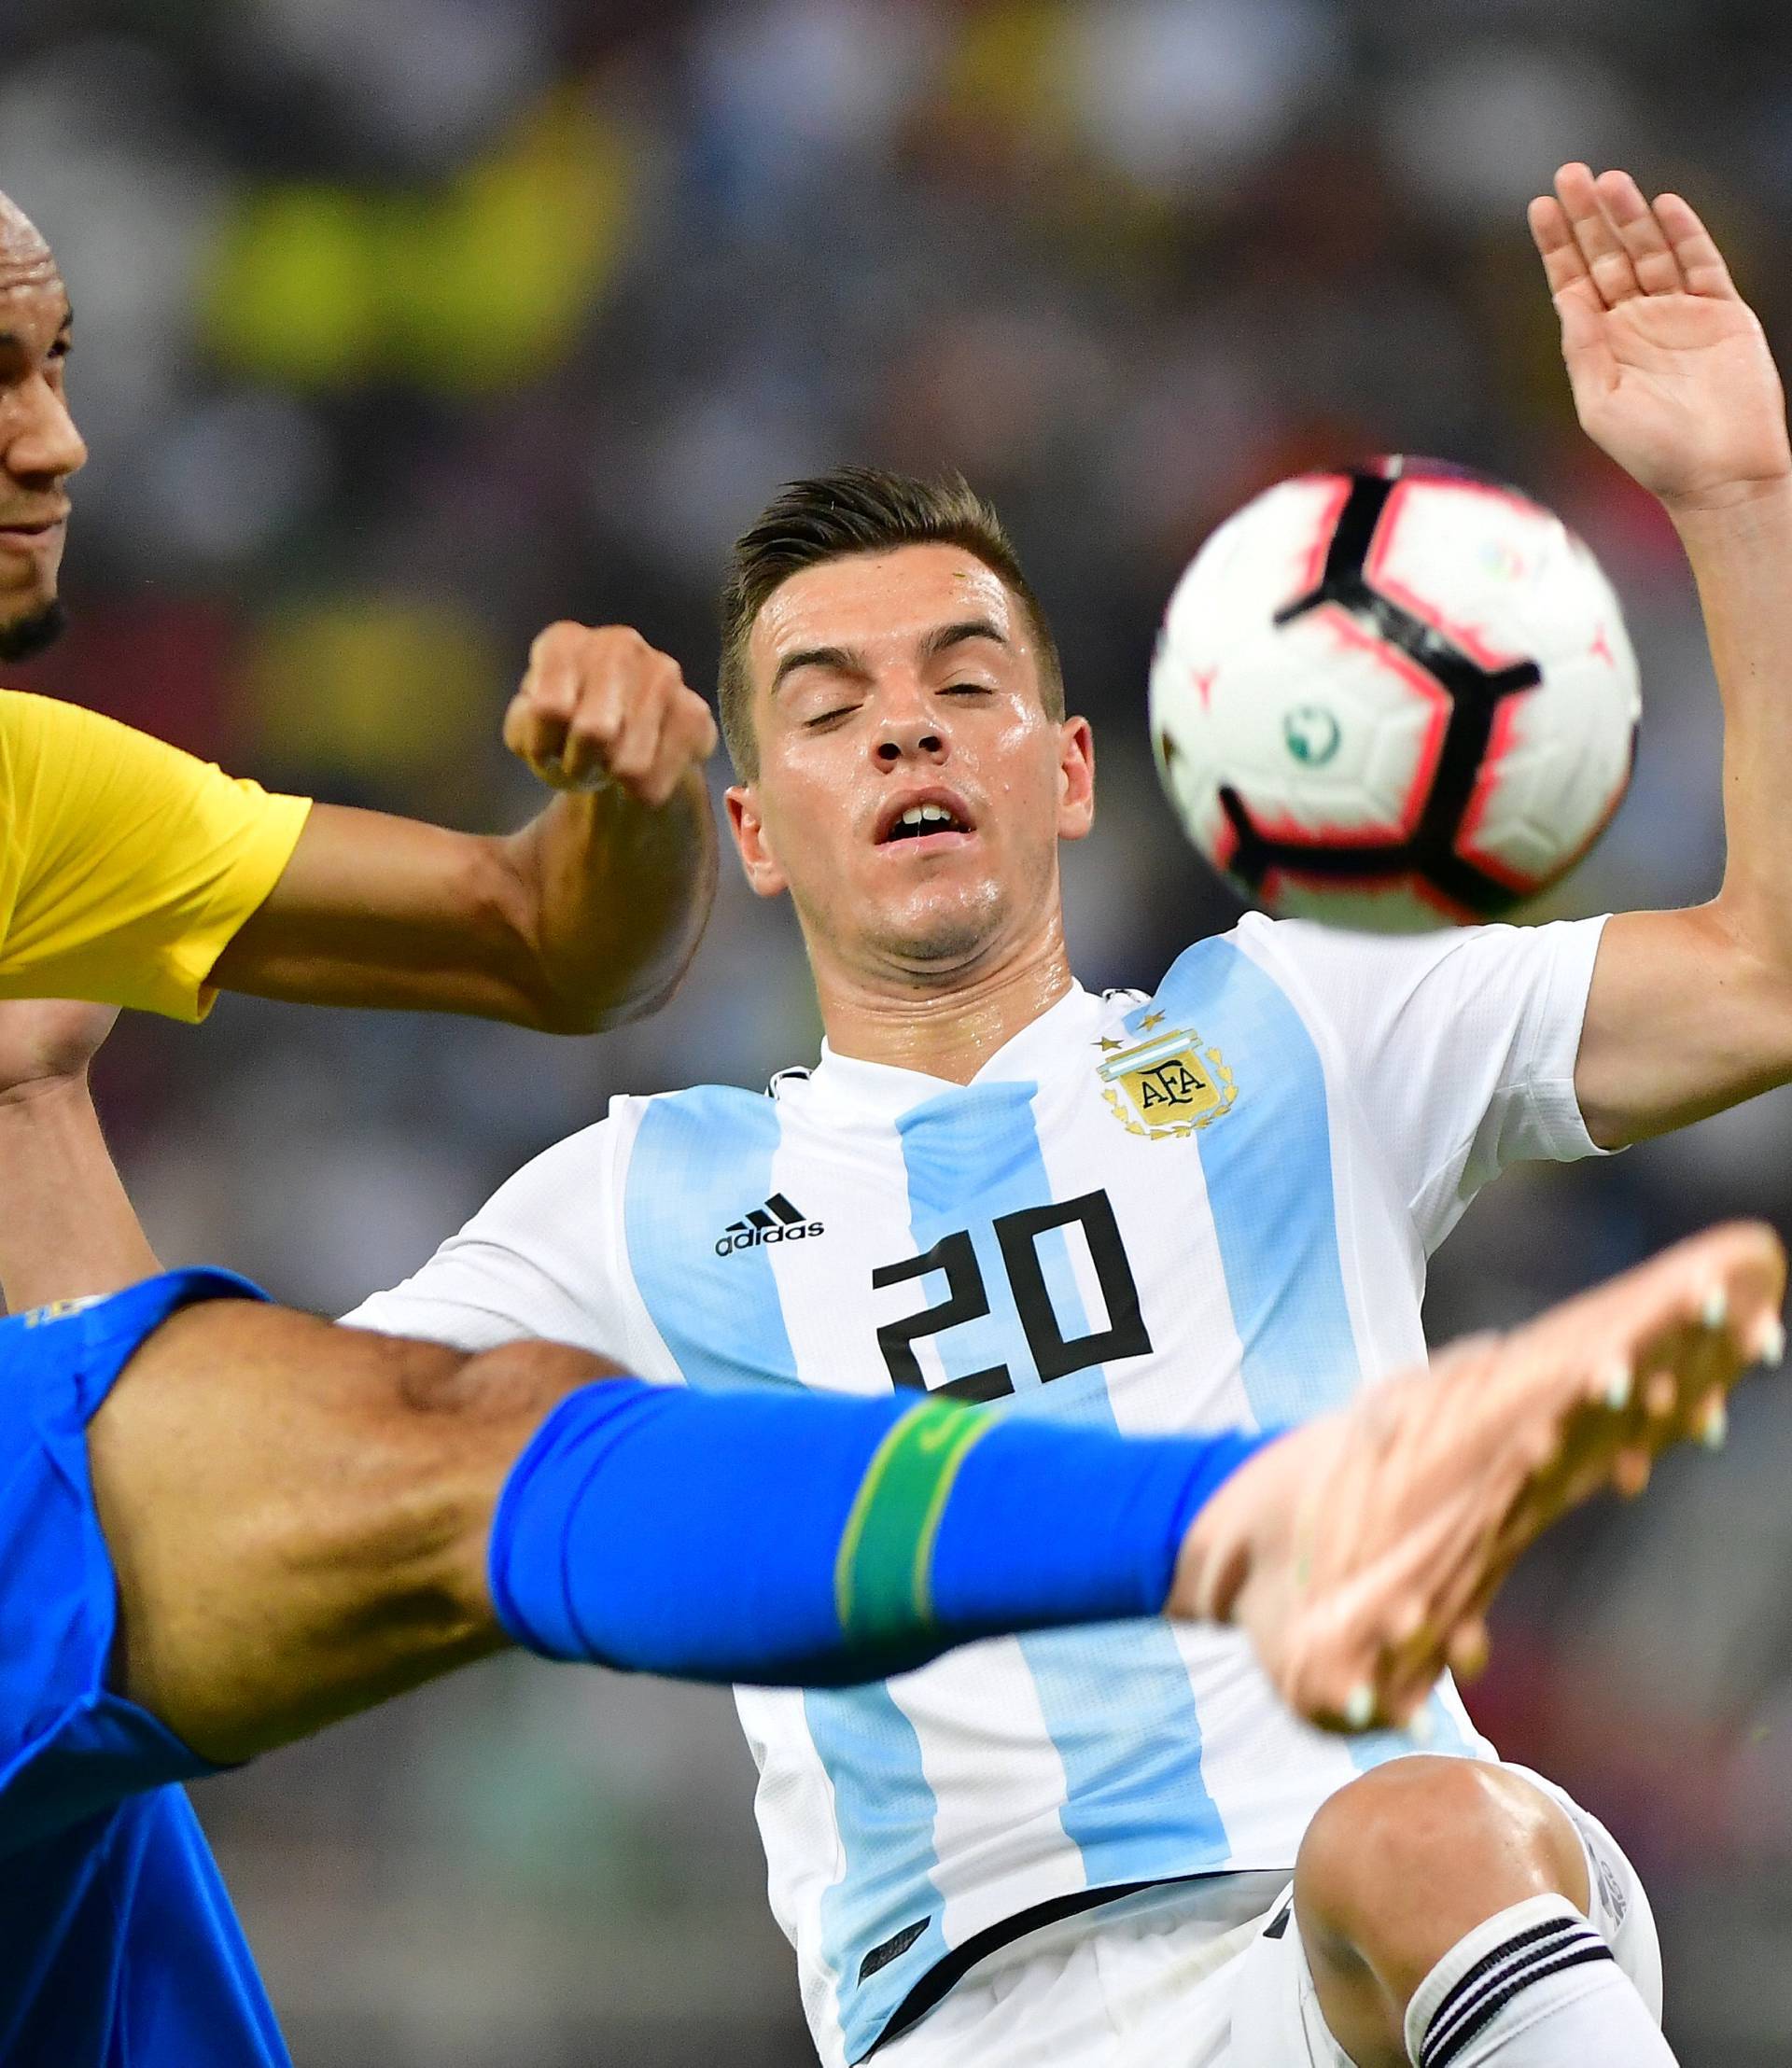 International Friendly - Brazil v Argentina